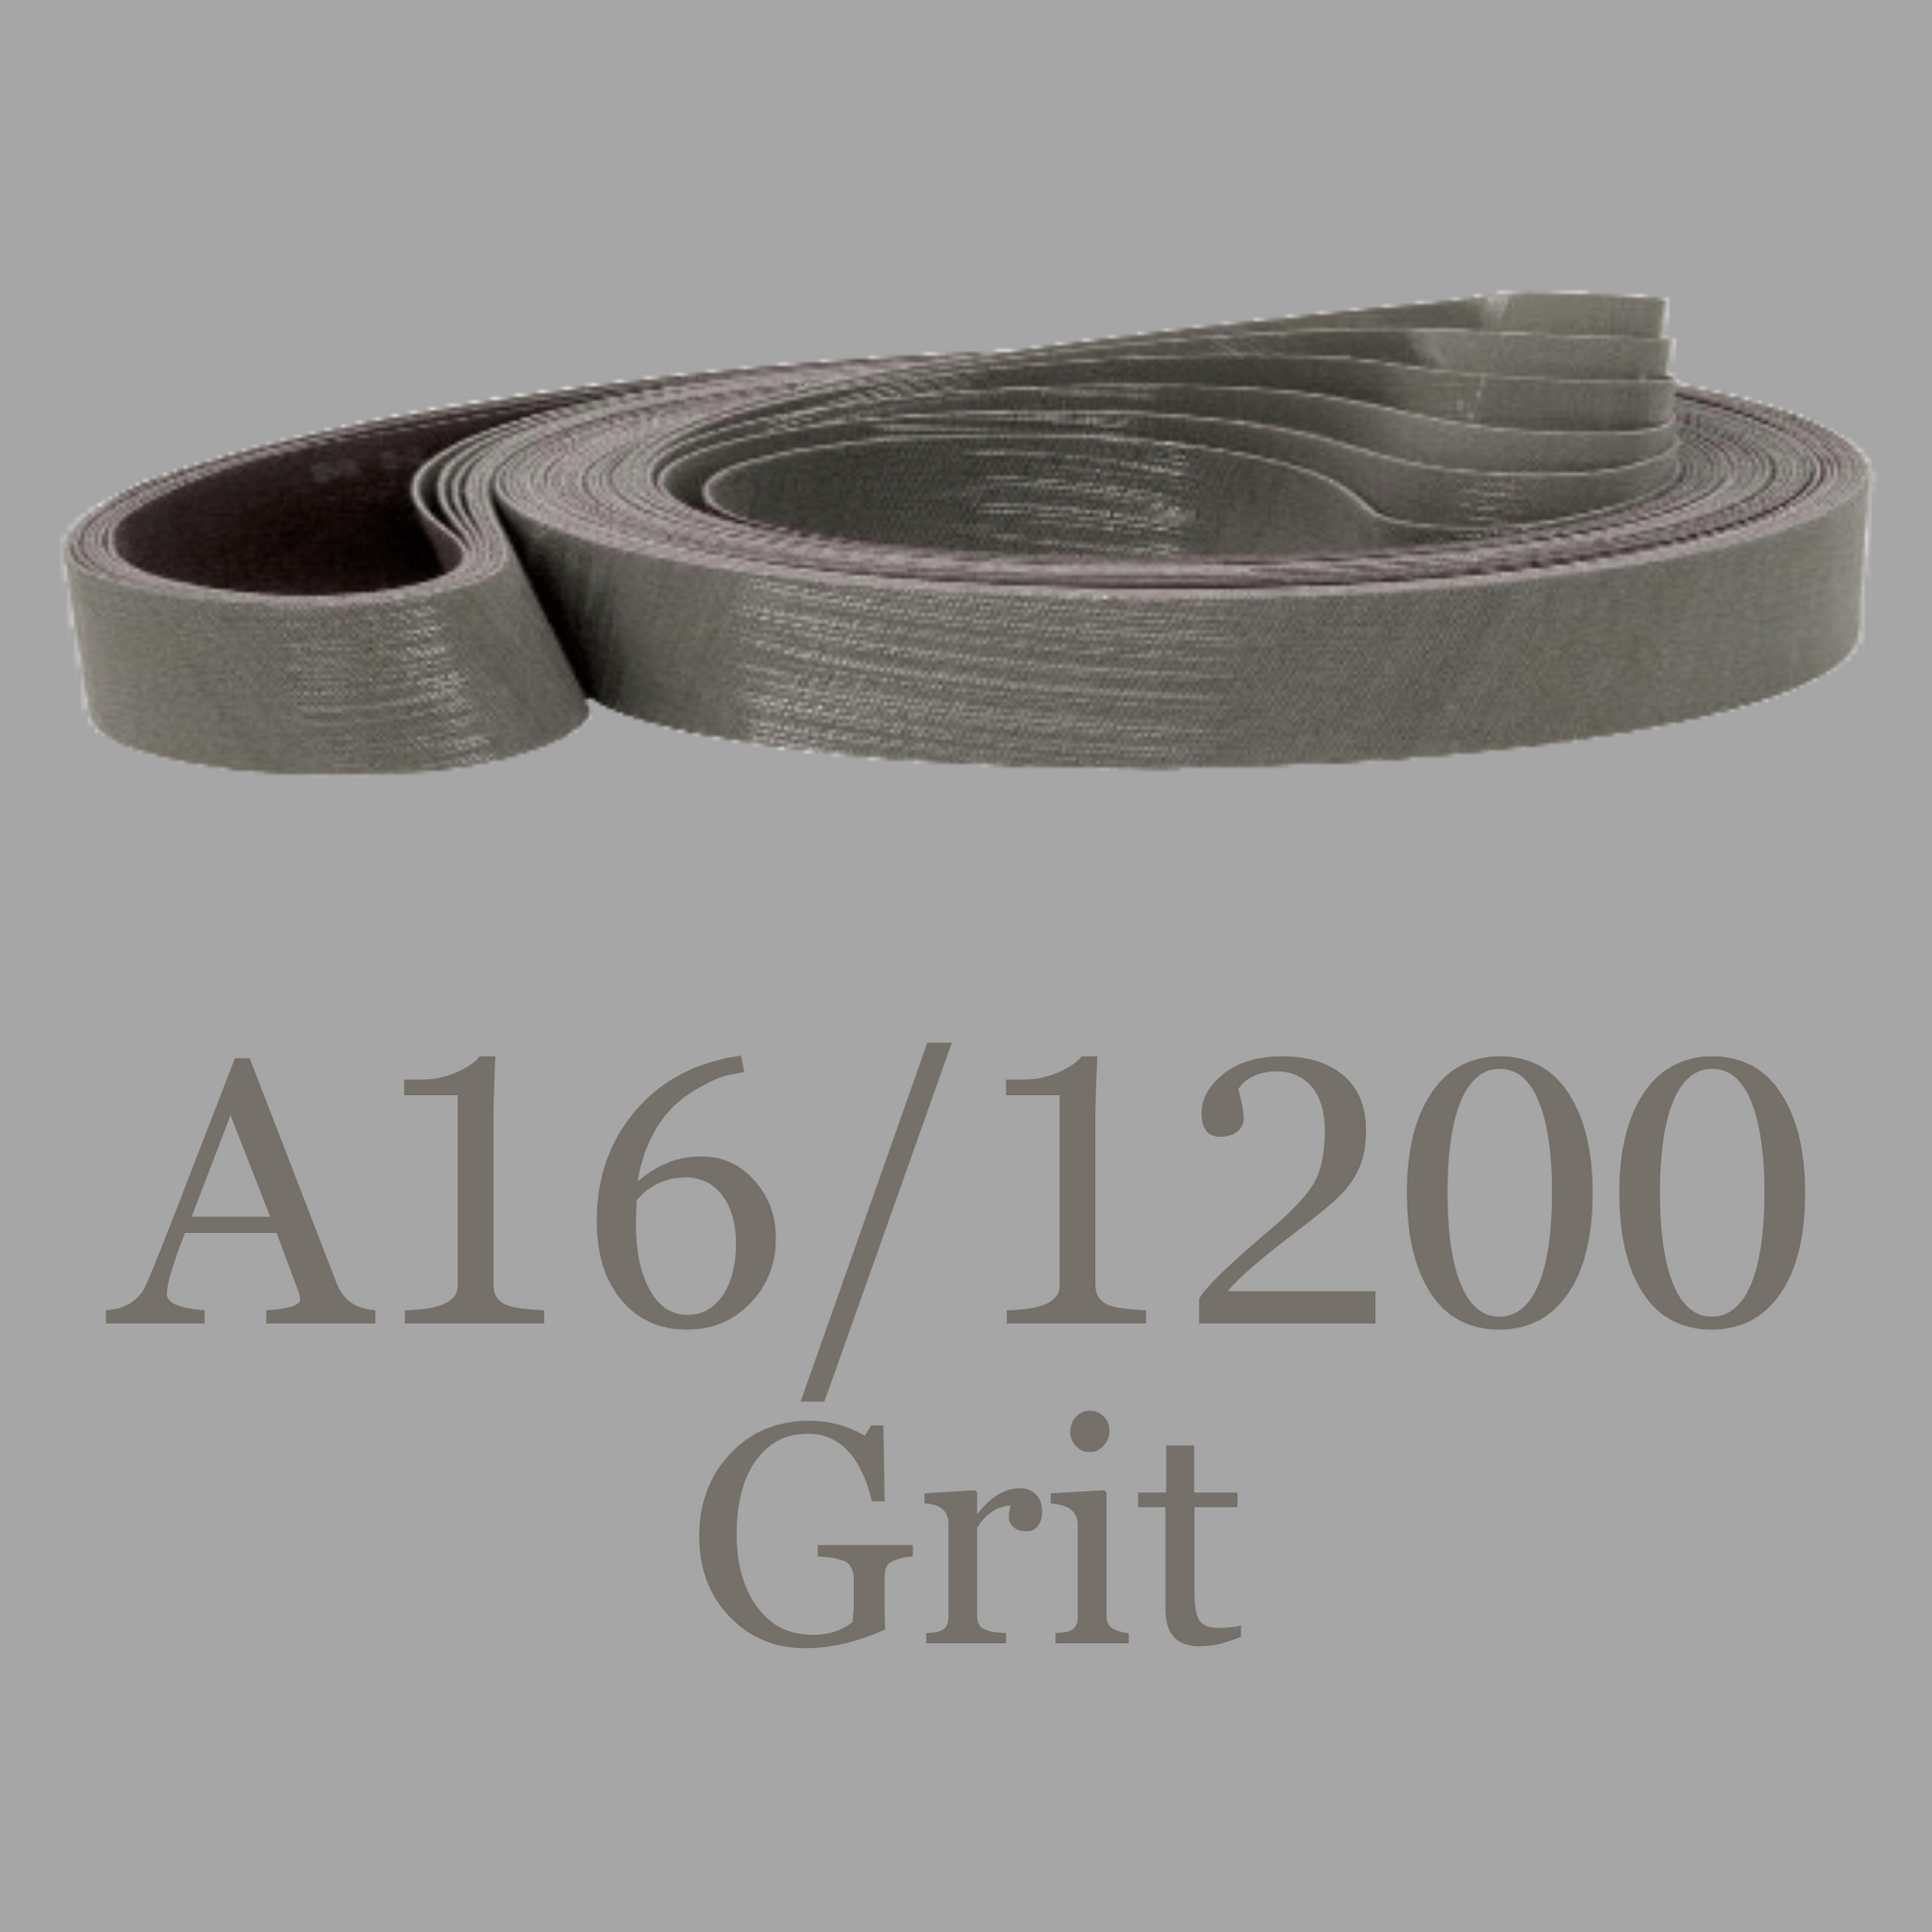 2” x 72” Trizact 307EA Gator Belts A16 or 1200 Grit